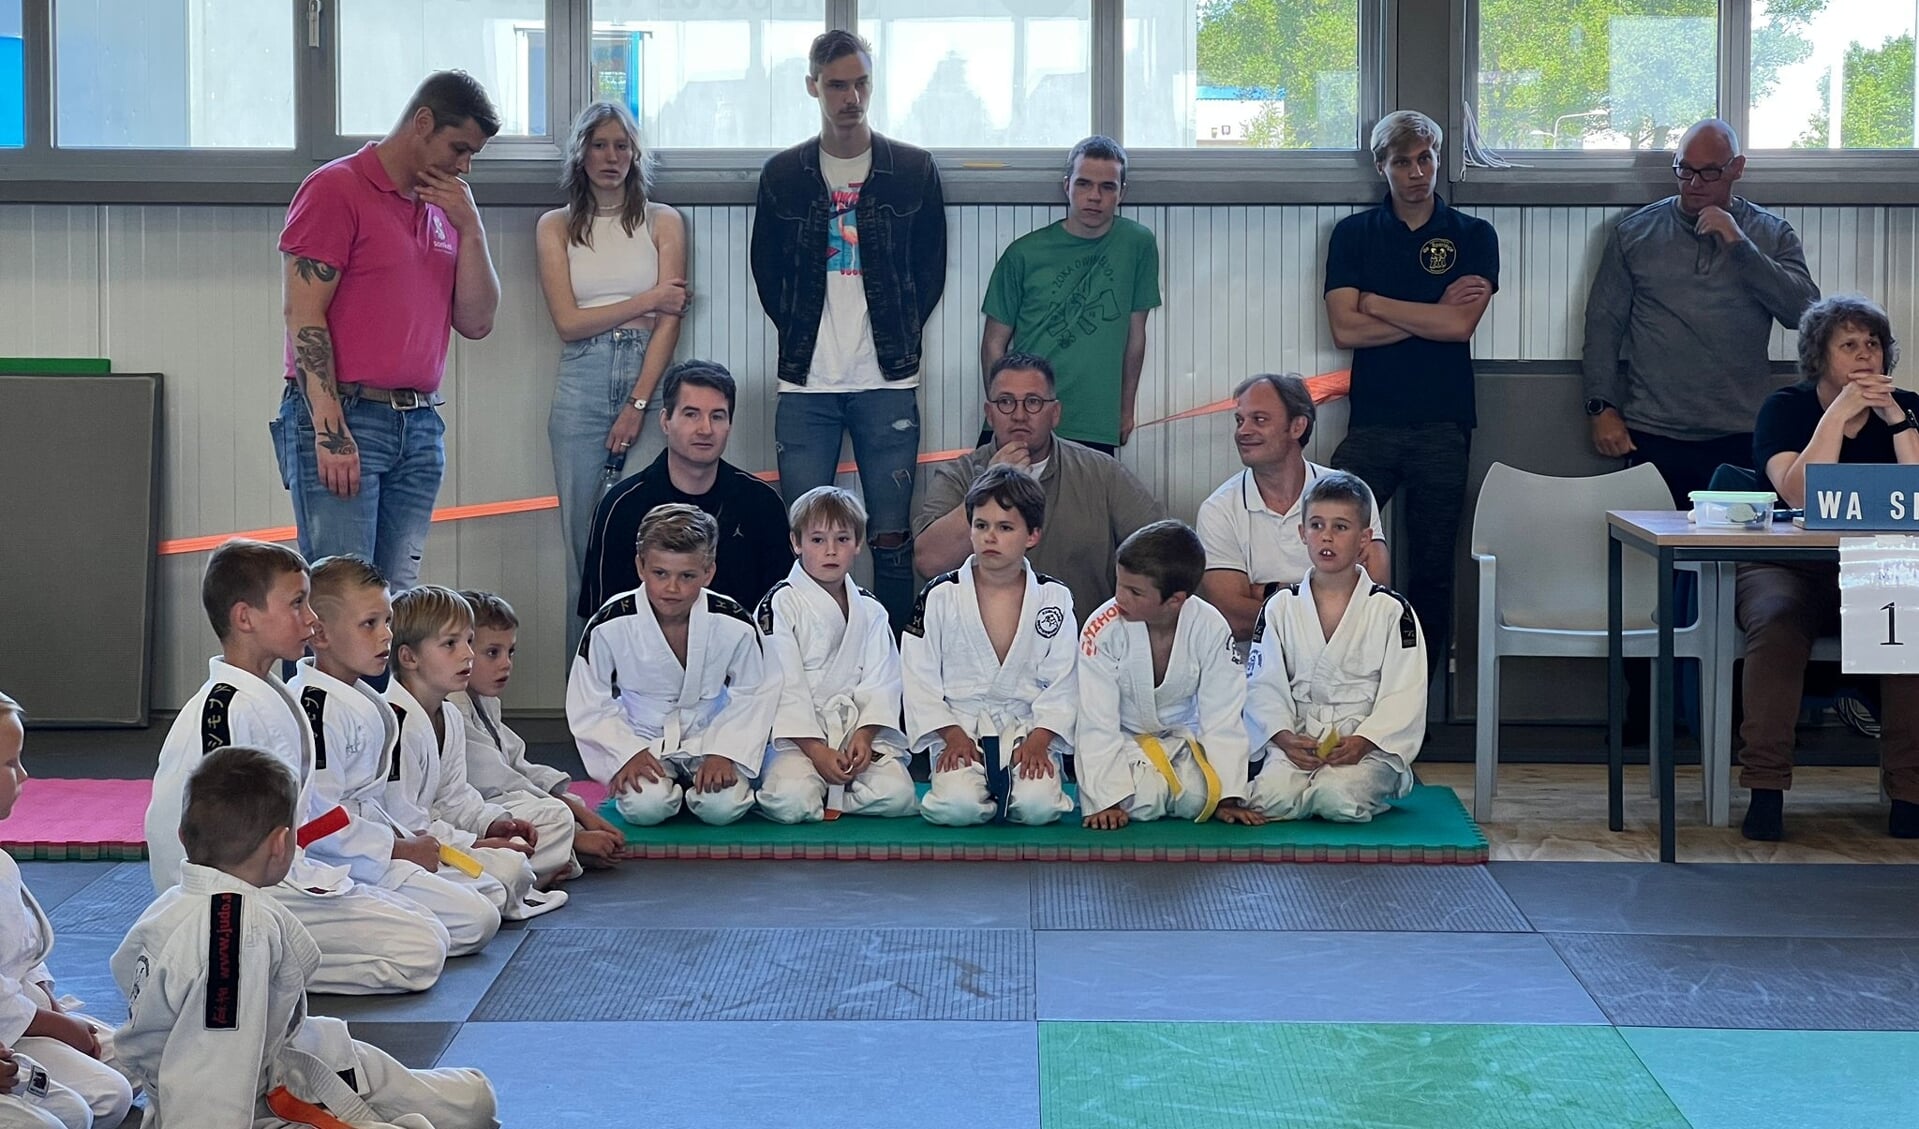 Concentratie bij de jonge judoka's voorafgaand aan hun partijen.